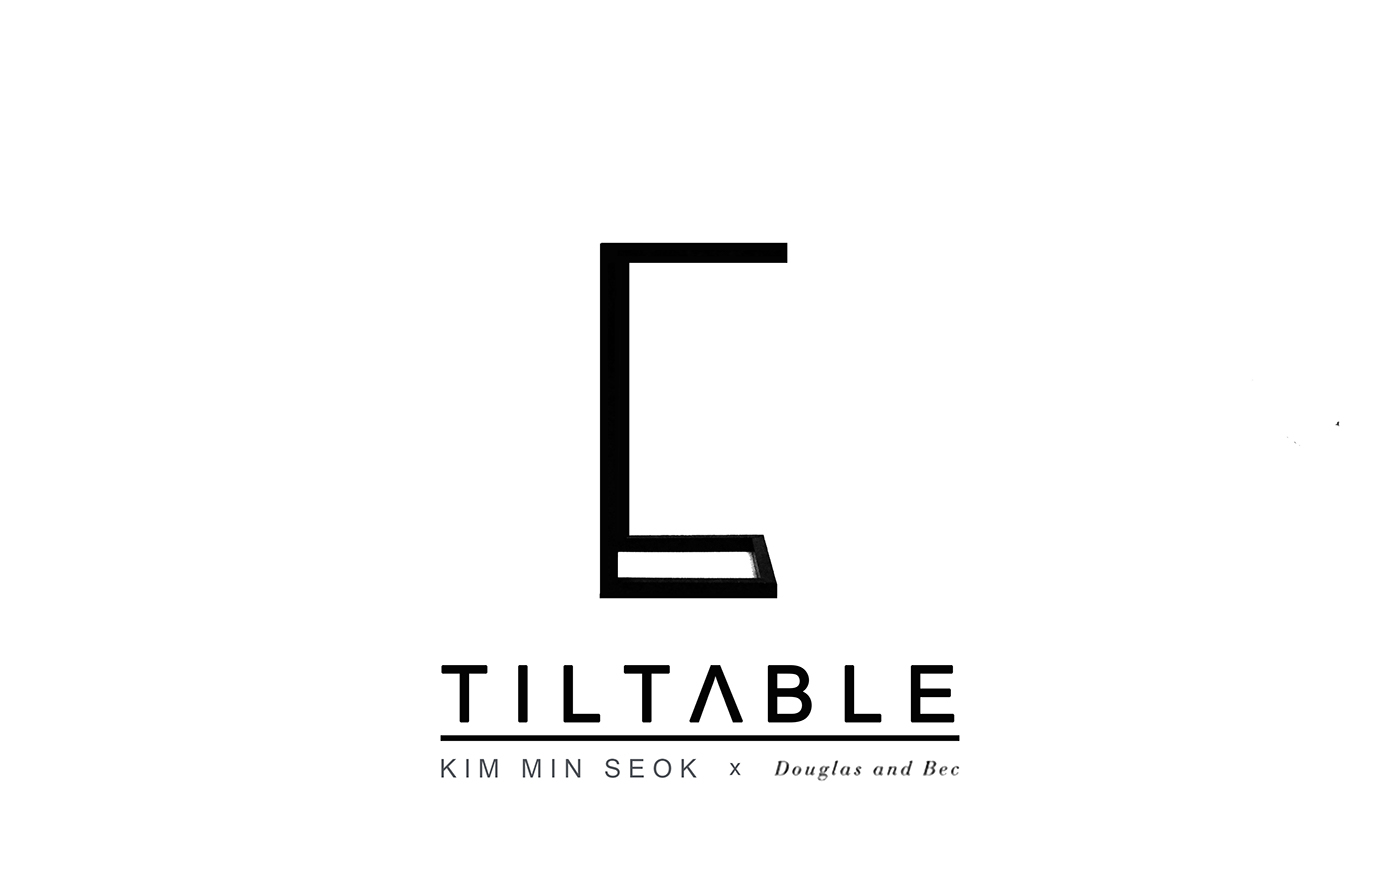 Tiltable TILT ABLE TIL TABLE table tilt msk